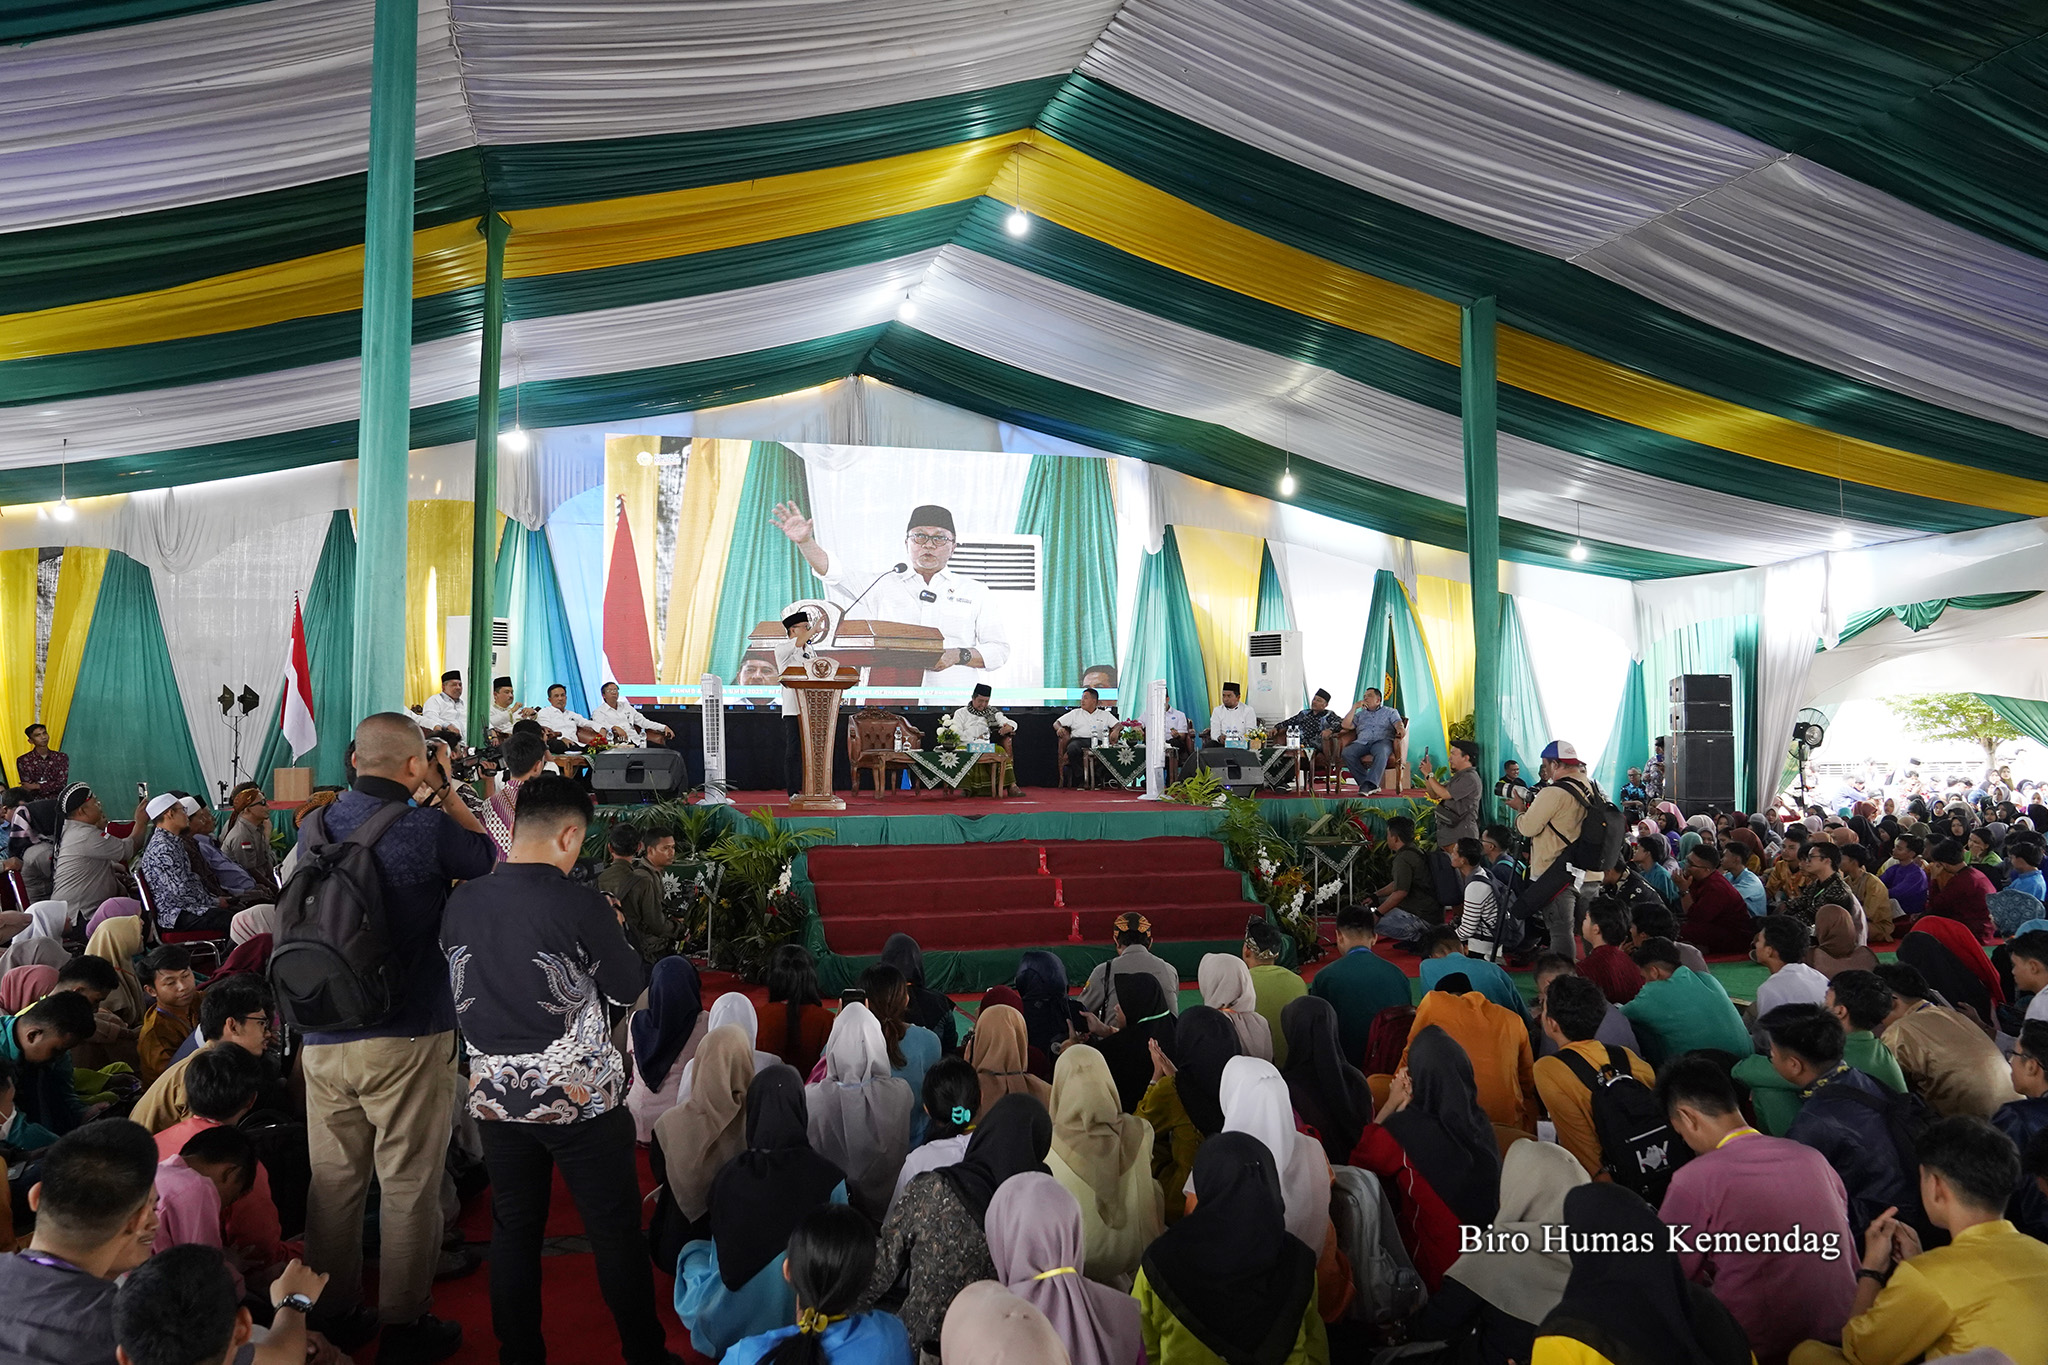 Menteri Perdagangan, Zulkifli Hasan memberikan kuliah umum kepada mahasiswa baru Universitas Muhammadiyah Riau (UMRI) di Pekanbaru, Riau, pada Jumat (15 Sep). Kuliah umum tersebut digelar dalam rangka Pengenalan Kehidupan Kampus Bagi Mahasiswa Baru (PKKMB).